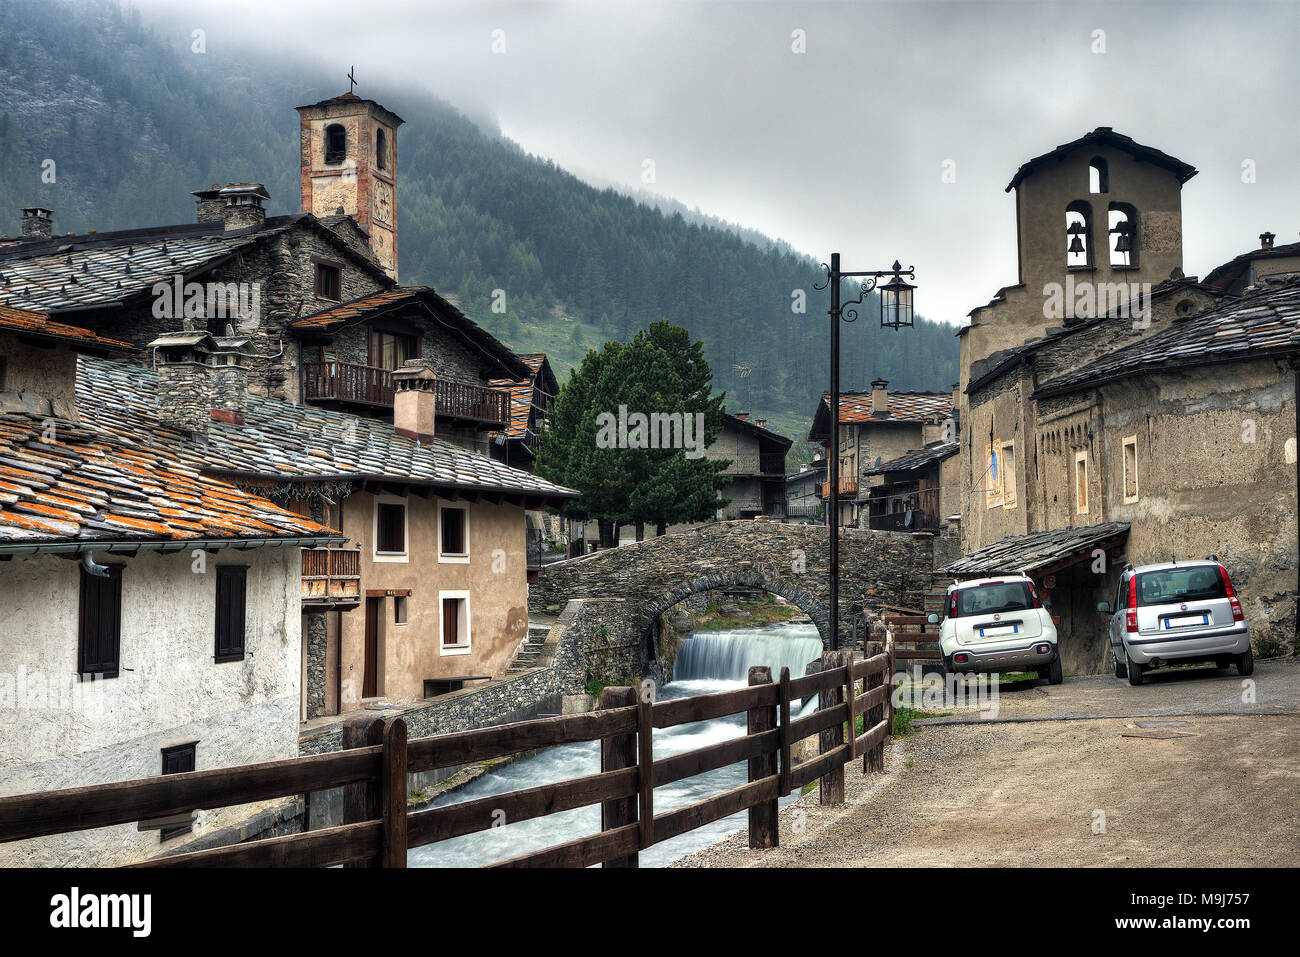 Il borgo di Chianale è l'ultimo e più alto (1800 m slm) della Valle Varaita, Italia. È sulla lista dei borghi più belli d'Italia. Foto Stock